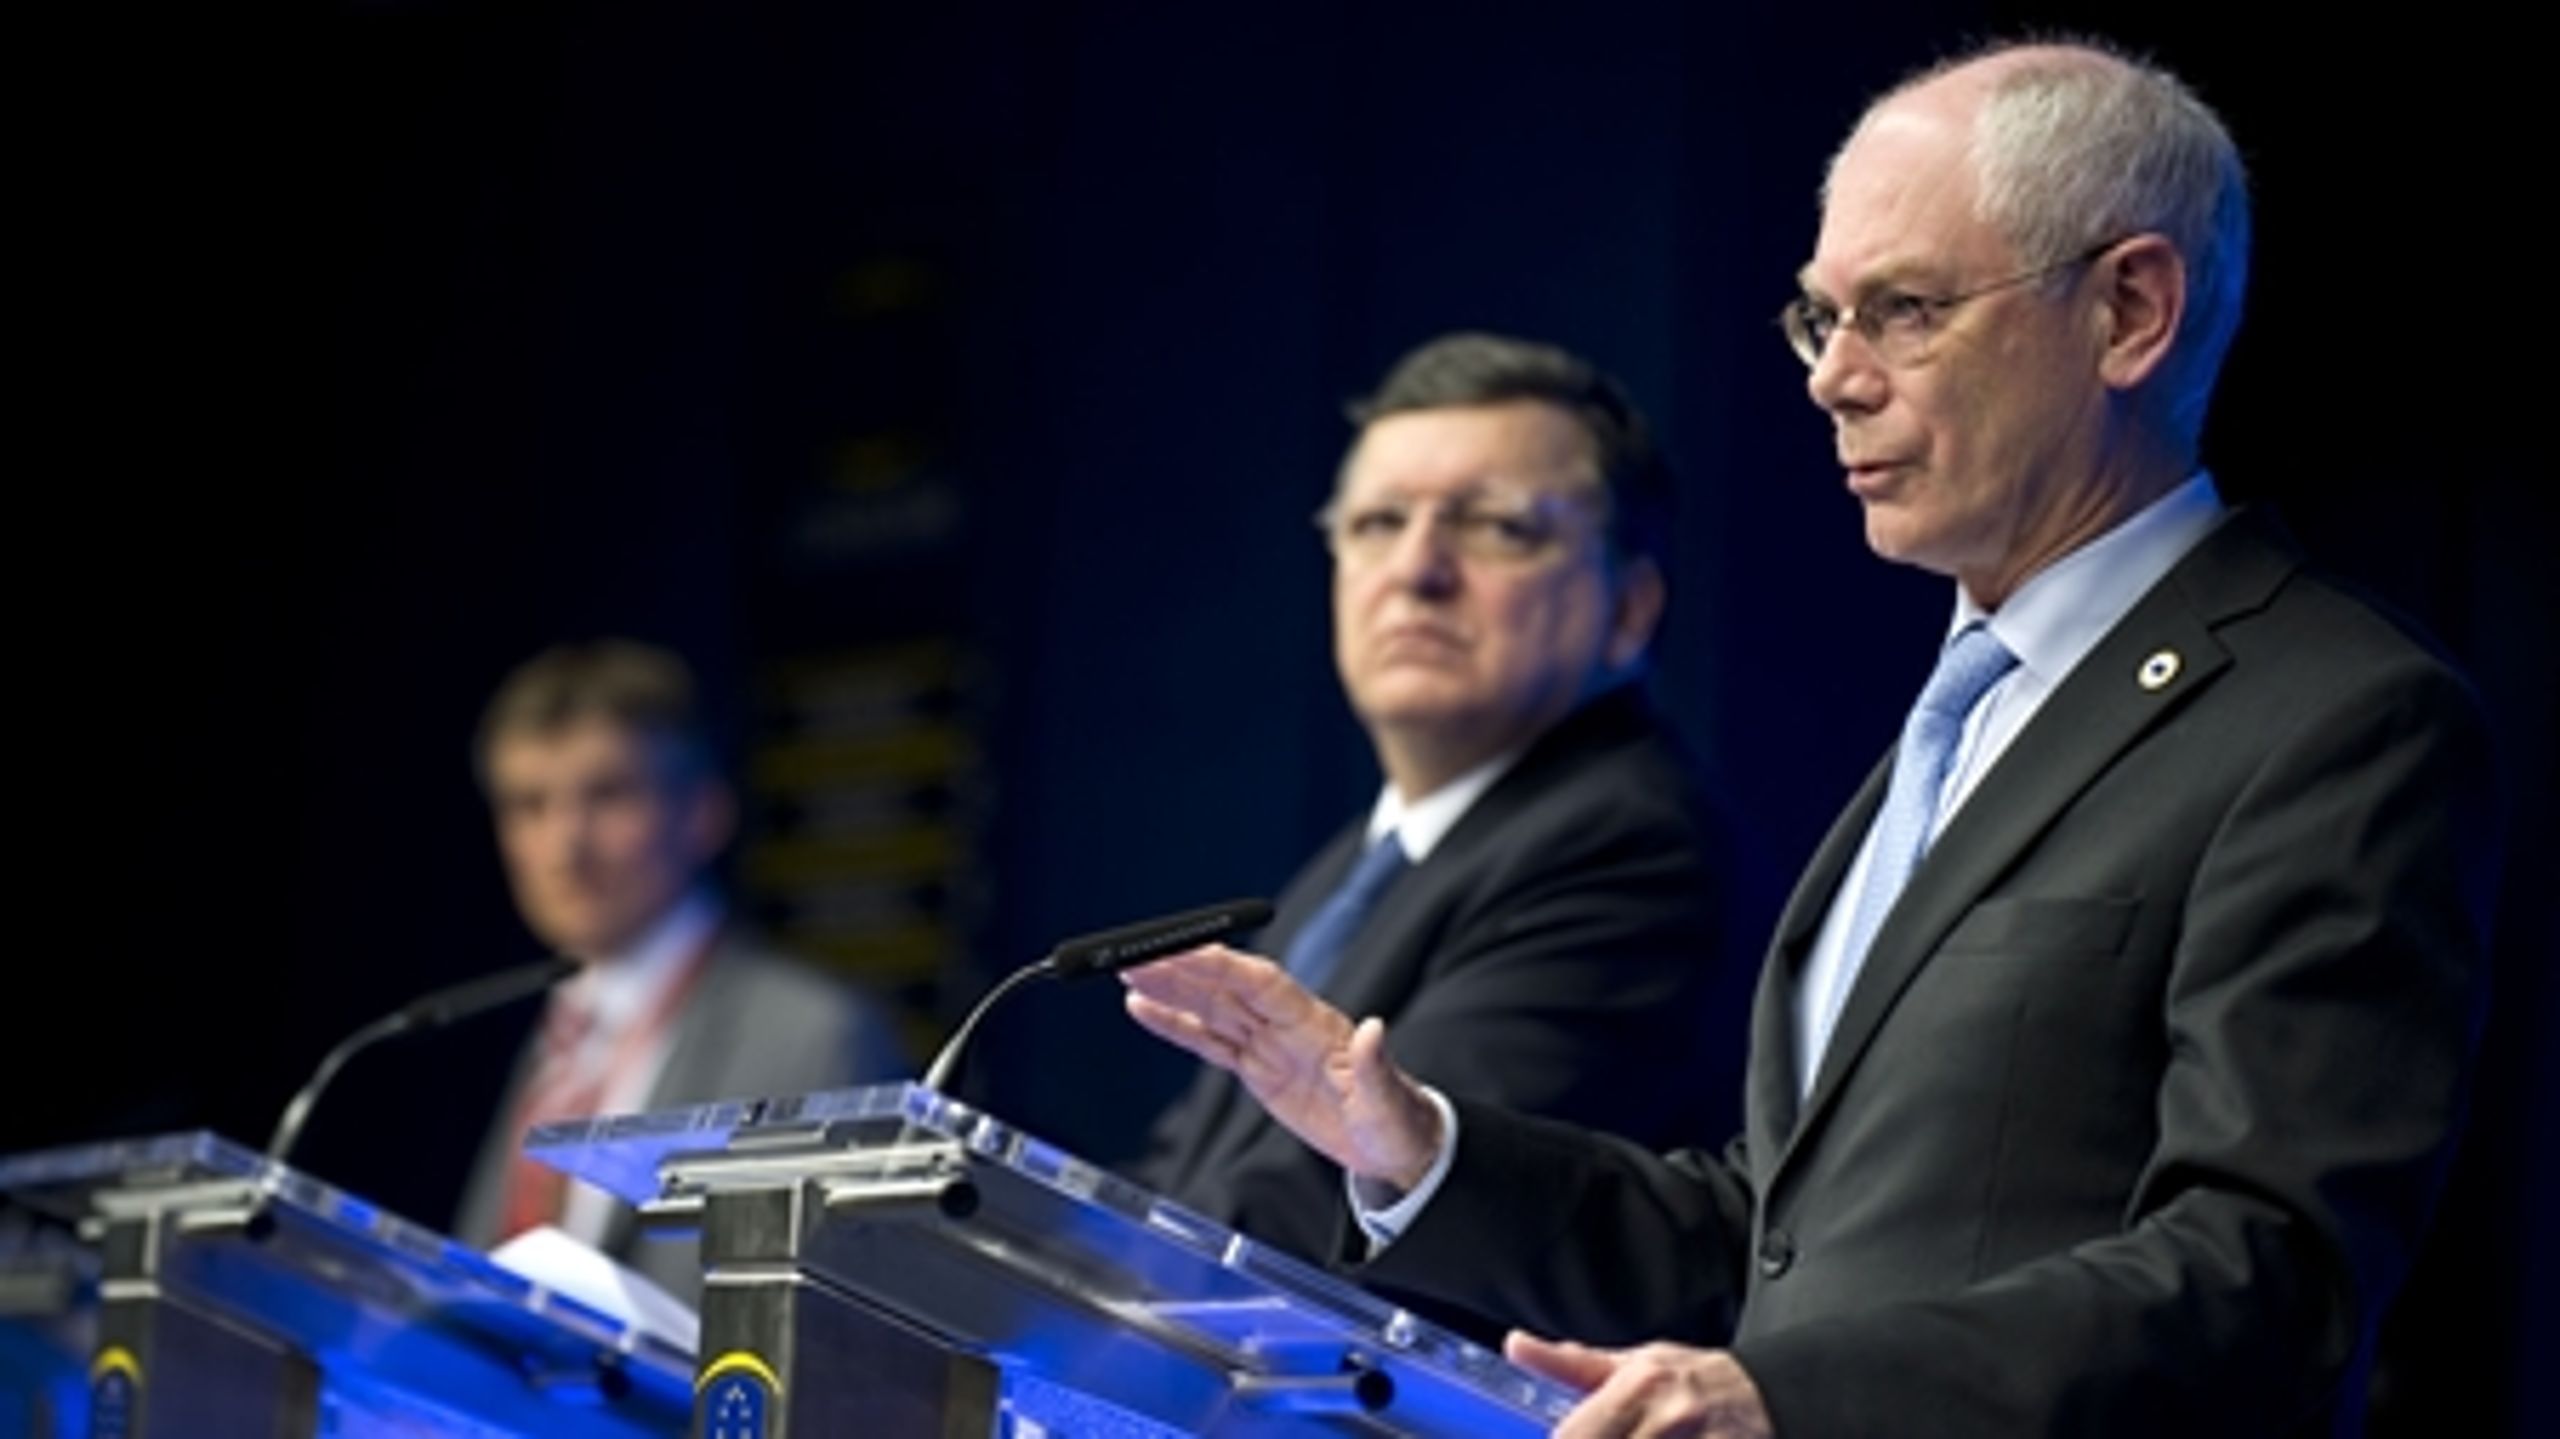 Formanden for Det Europæiske Råd, Herman Van Rompuy, fordømmer Ruslands "uprovokerede overtrædelse af Ukraines suverænitet".